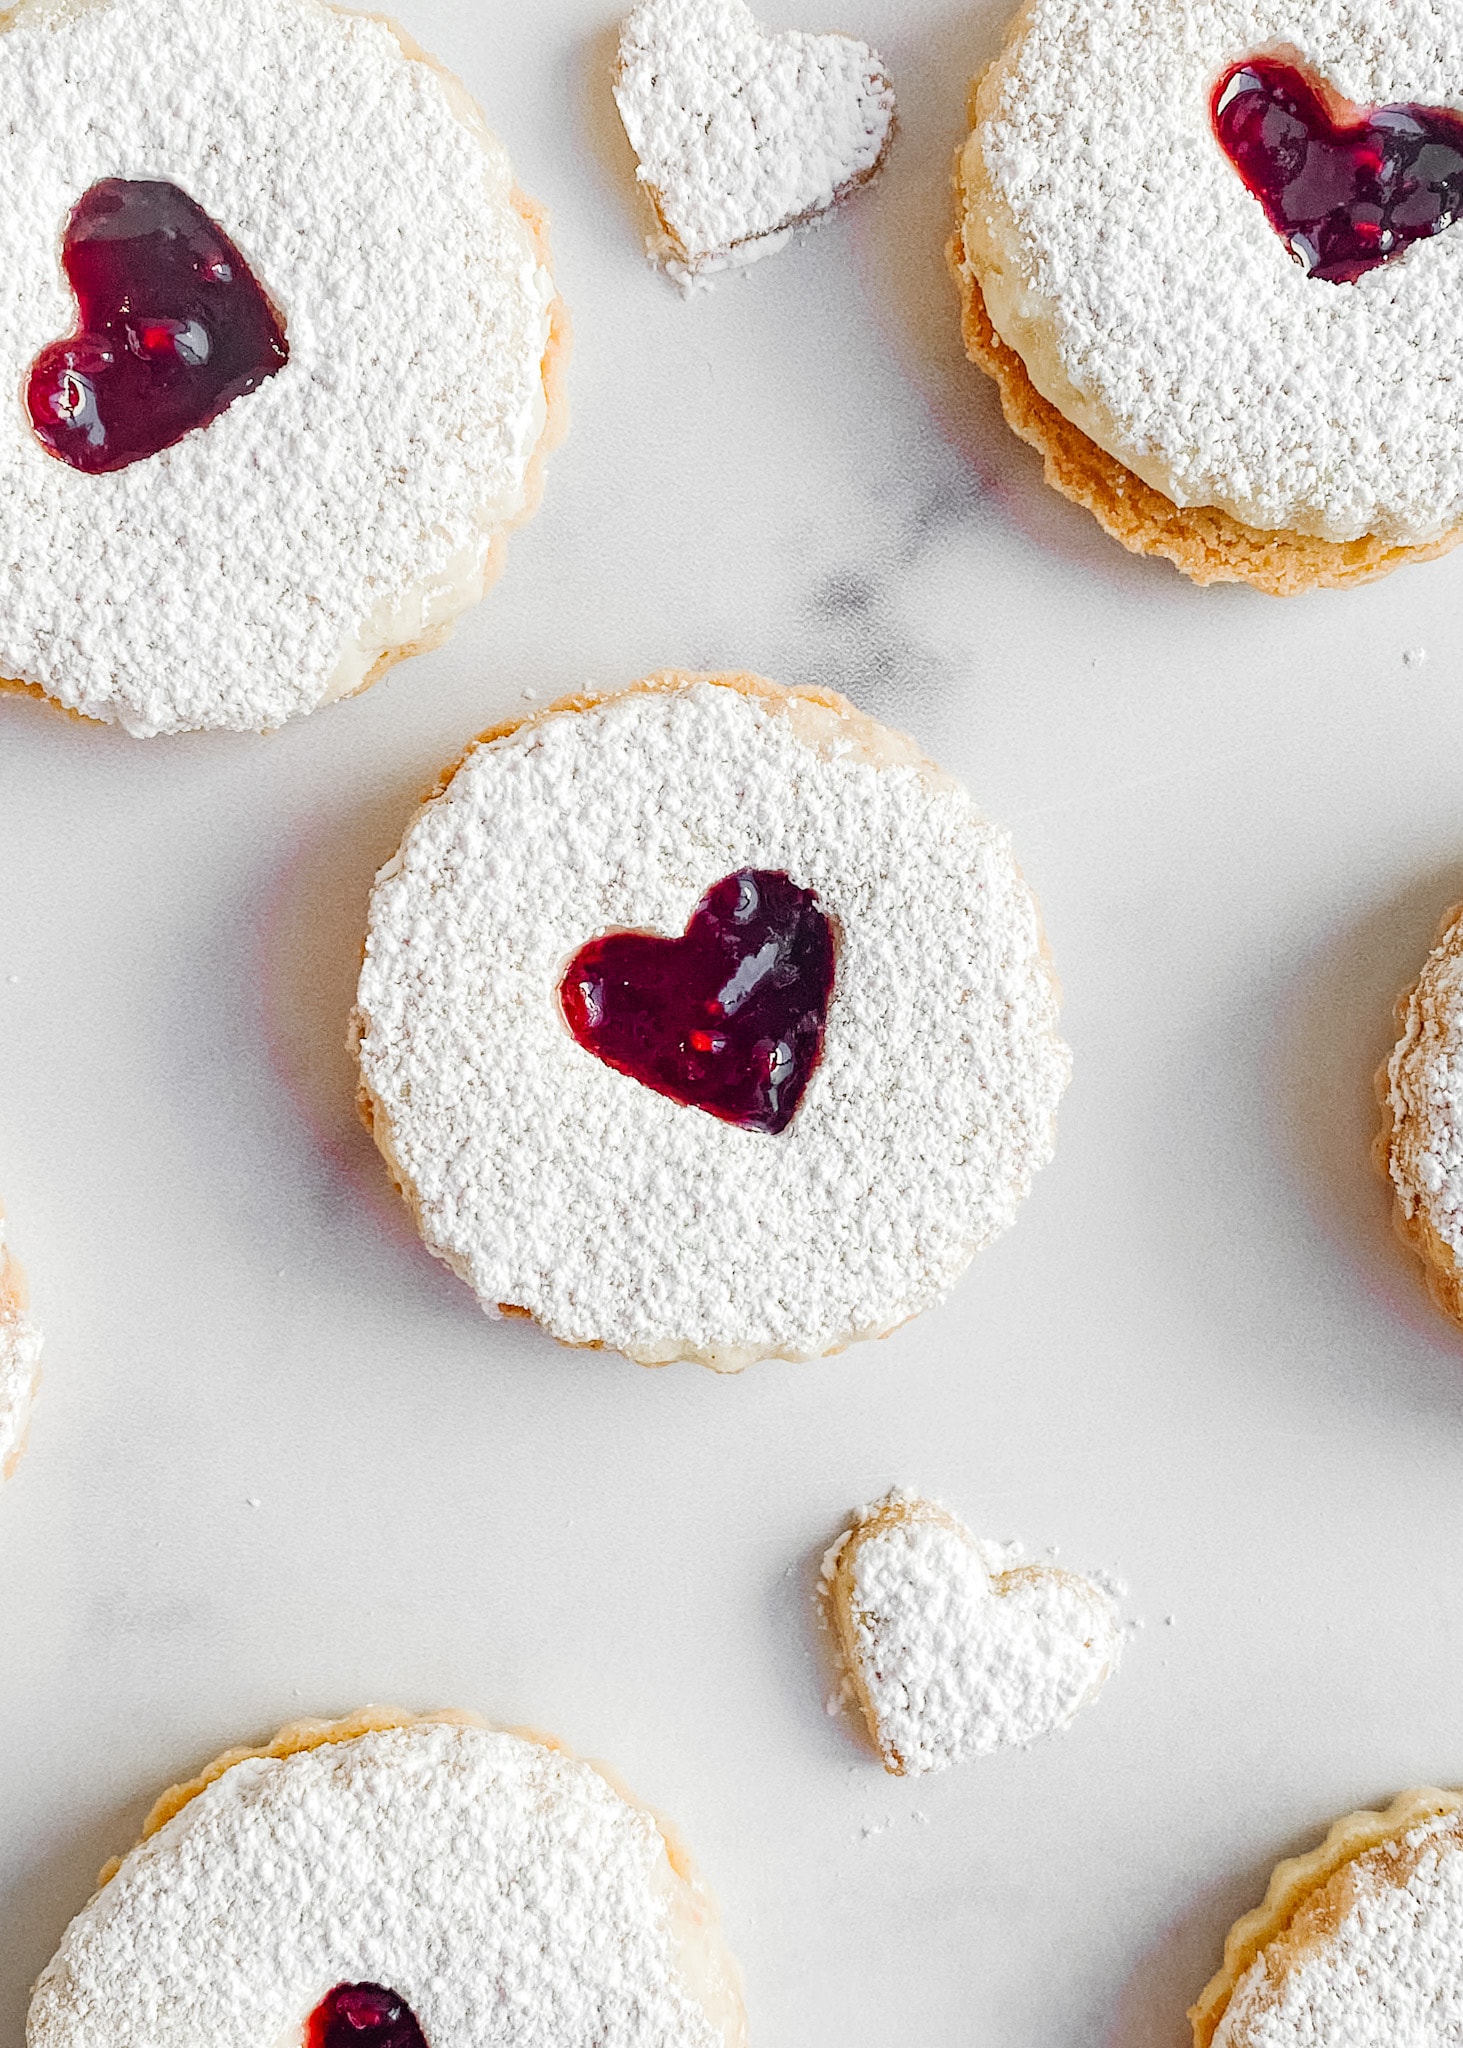 A photo focusing on one gluten-free raspberry linzer cookie.